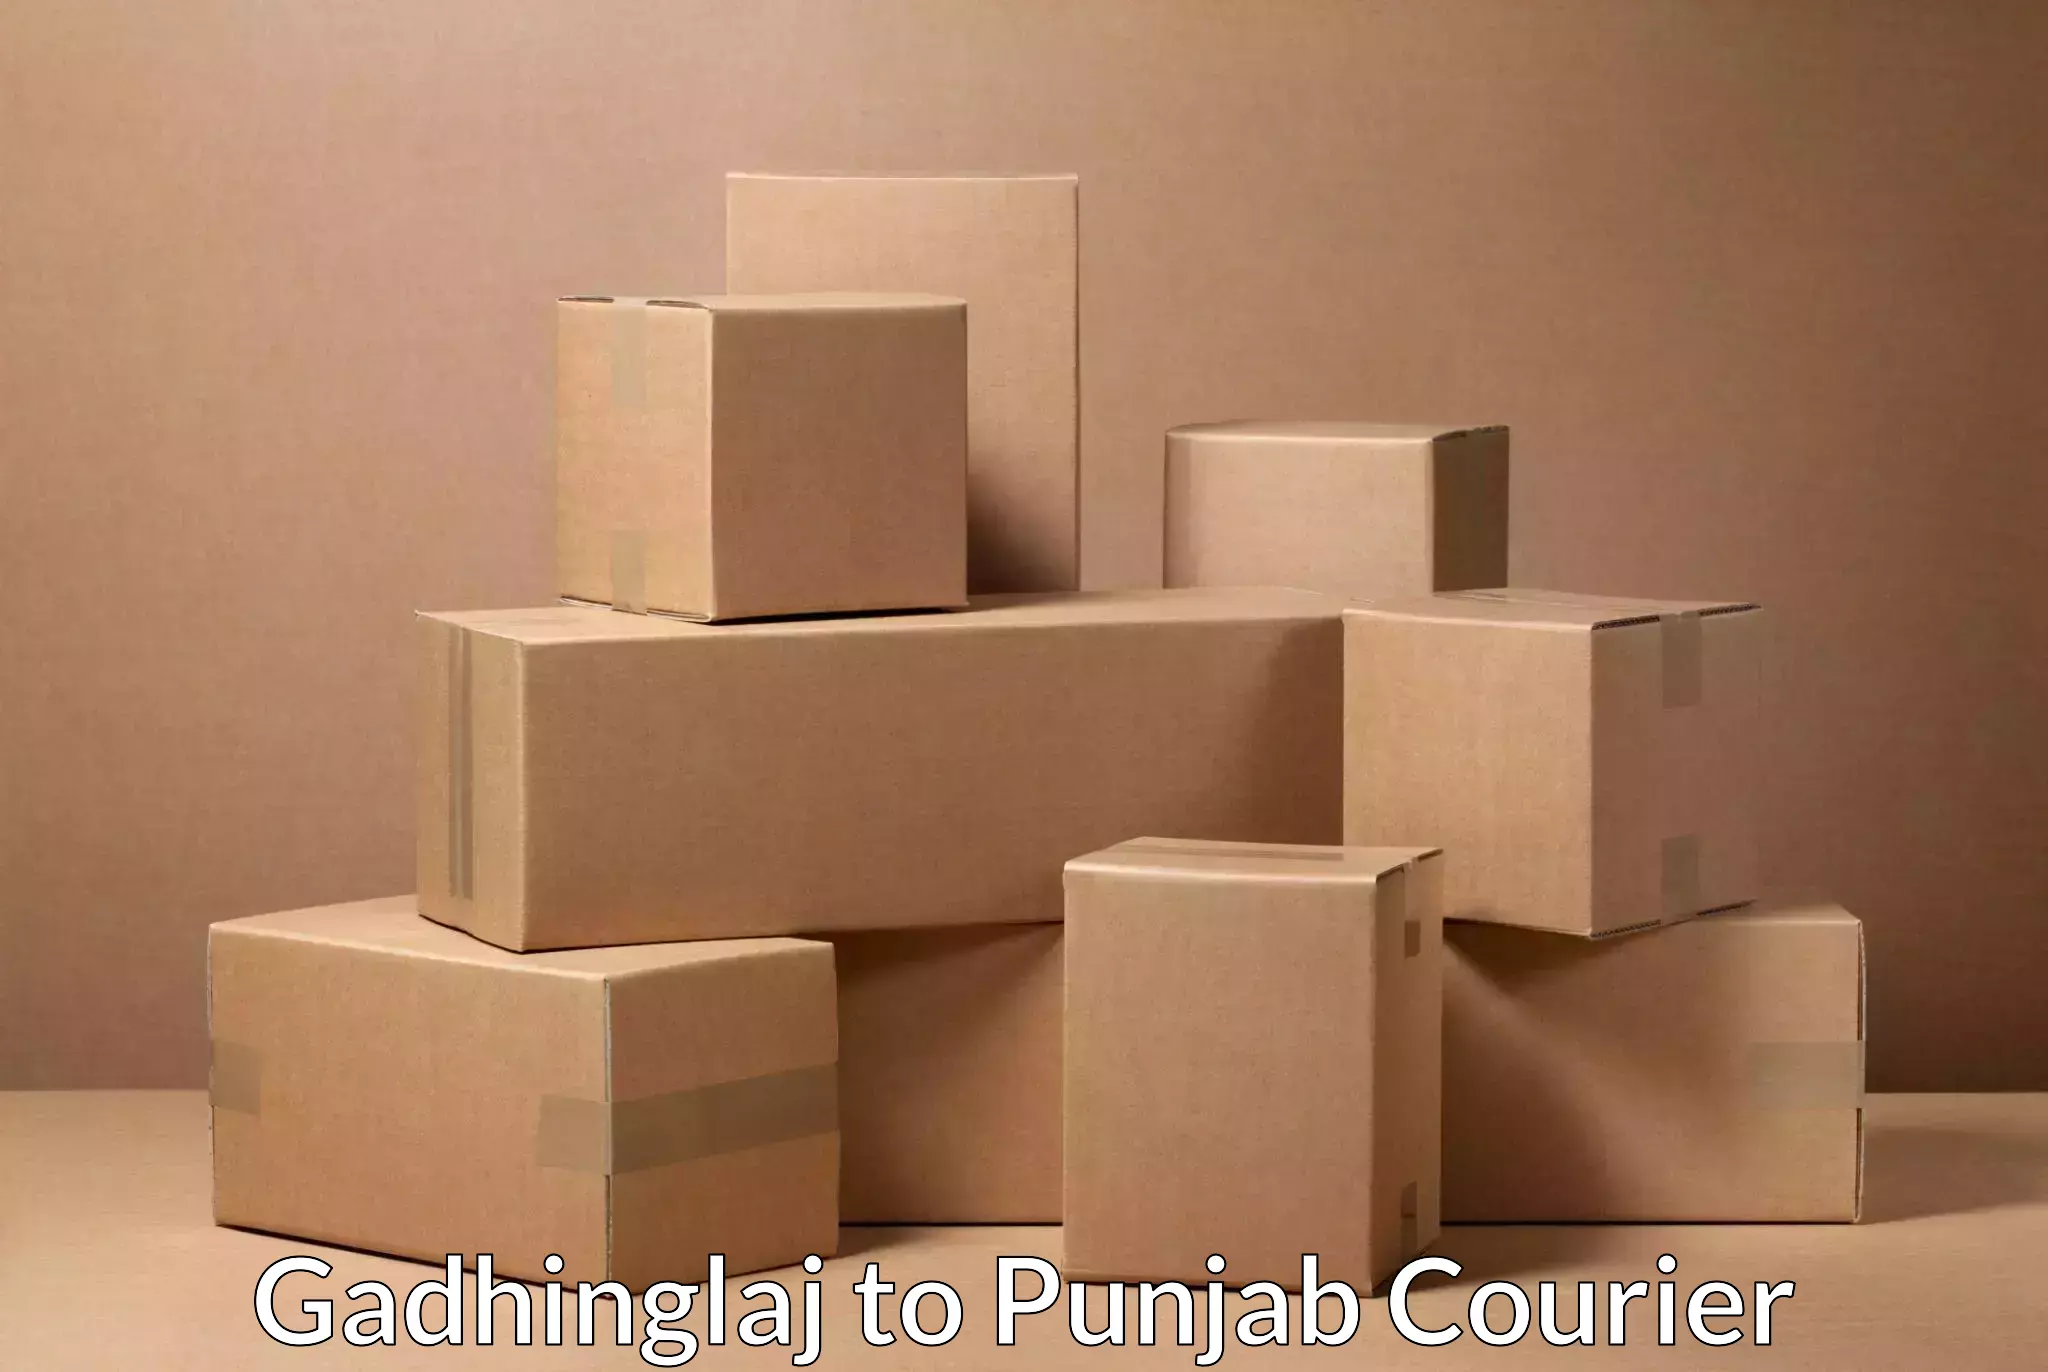 Multi-service courier options Gadhinglaj to Anandpur Sahib